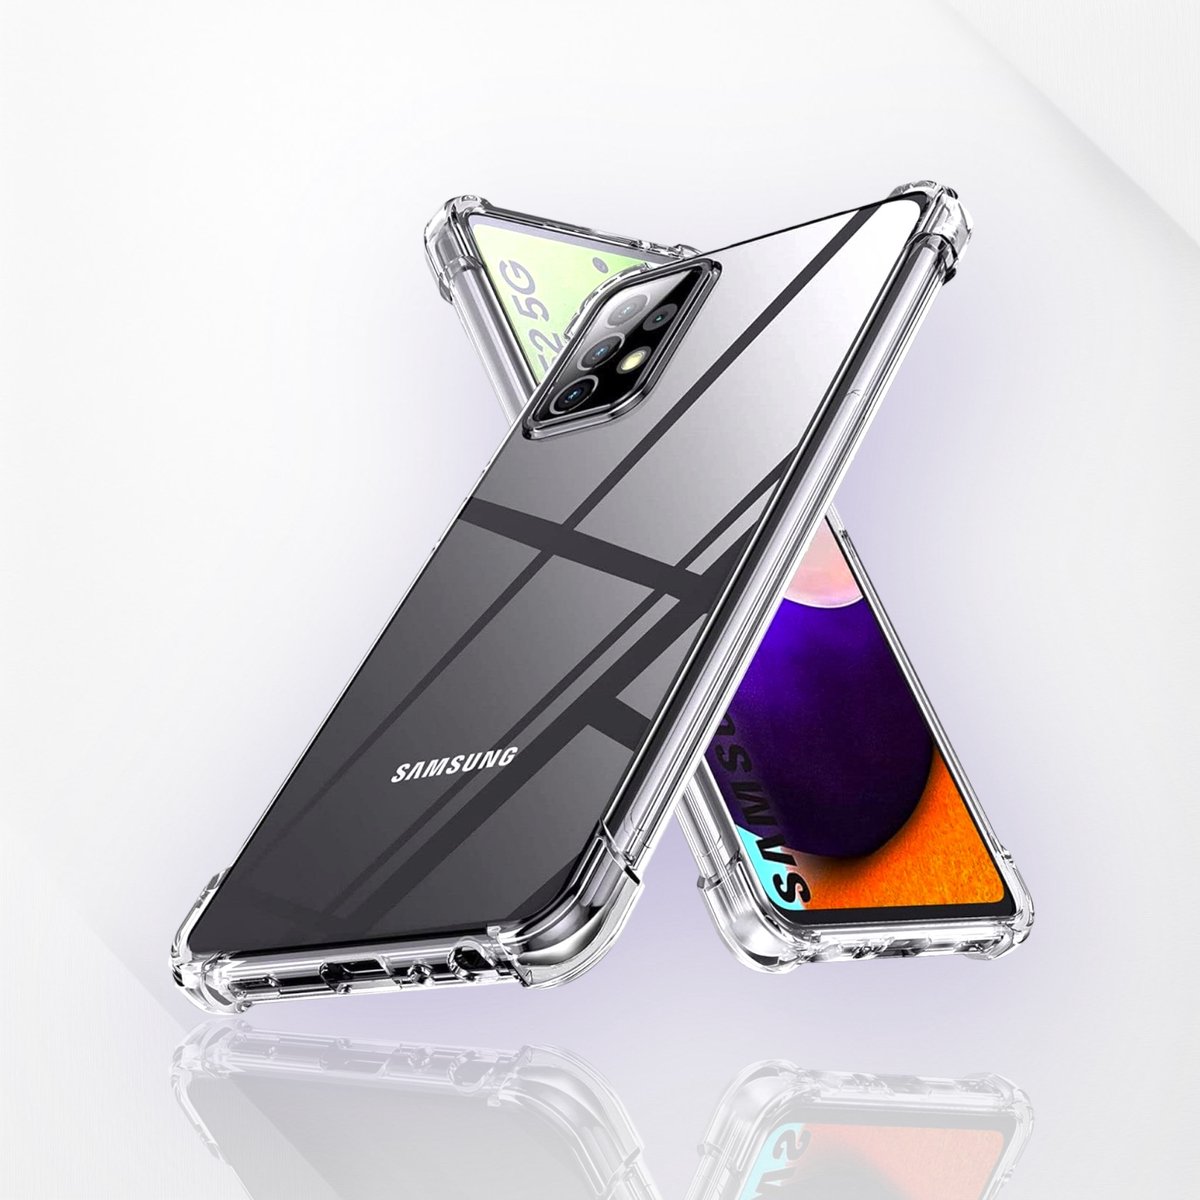 Samsung Galaxy A52/52S 5G Ultieme Shockproof Case! Ontdek de Transparante Luxe en Kracht Bescherming, Maximaal Stevig Hoesje van Premium Kwaliteit.